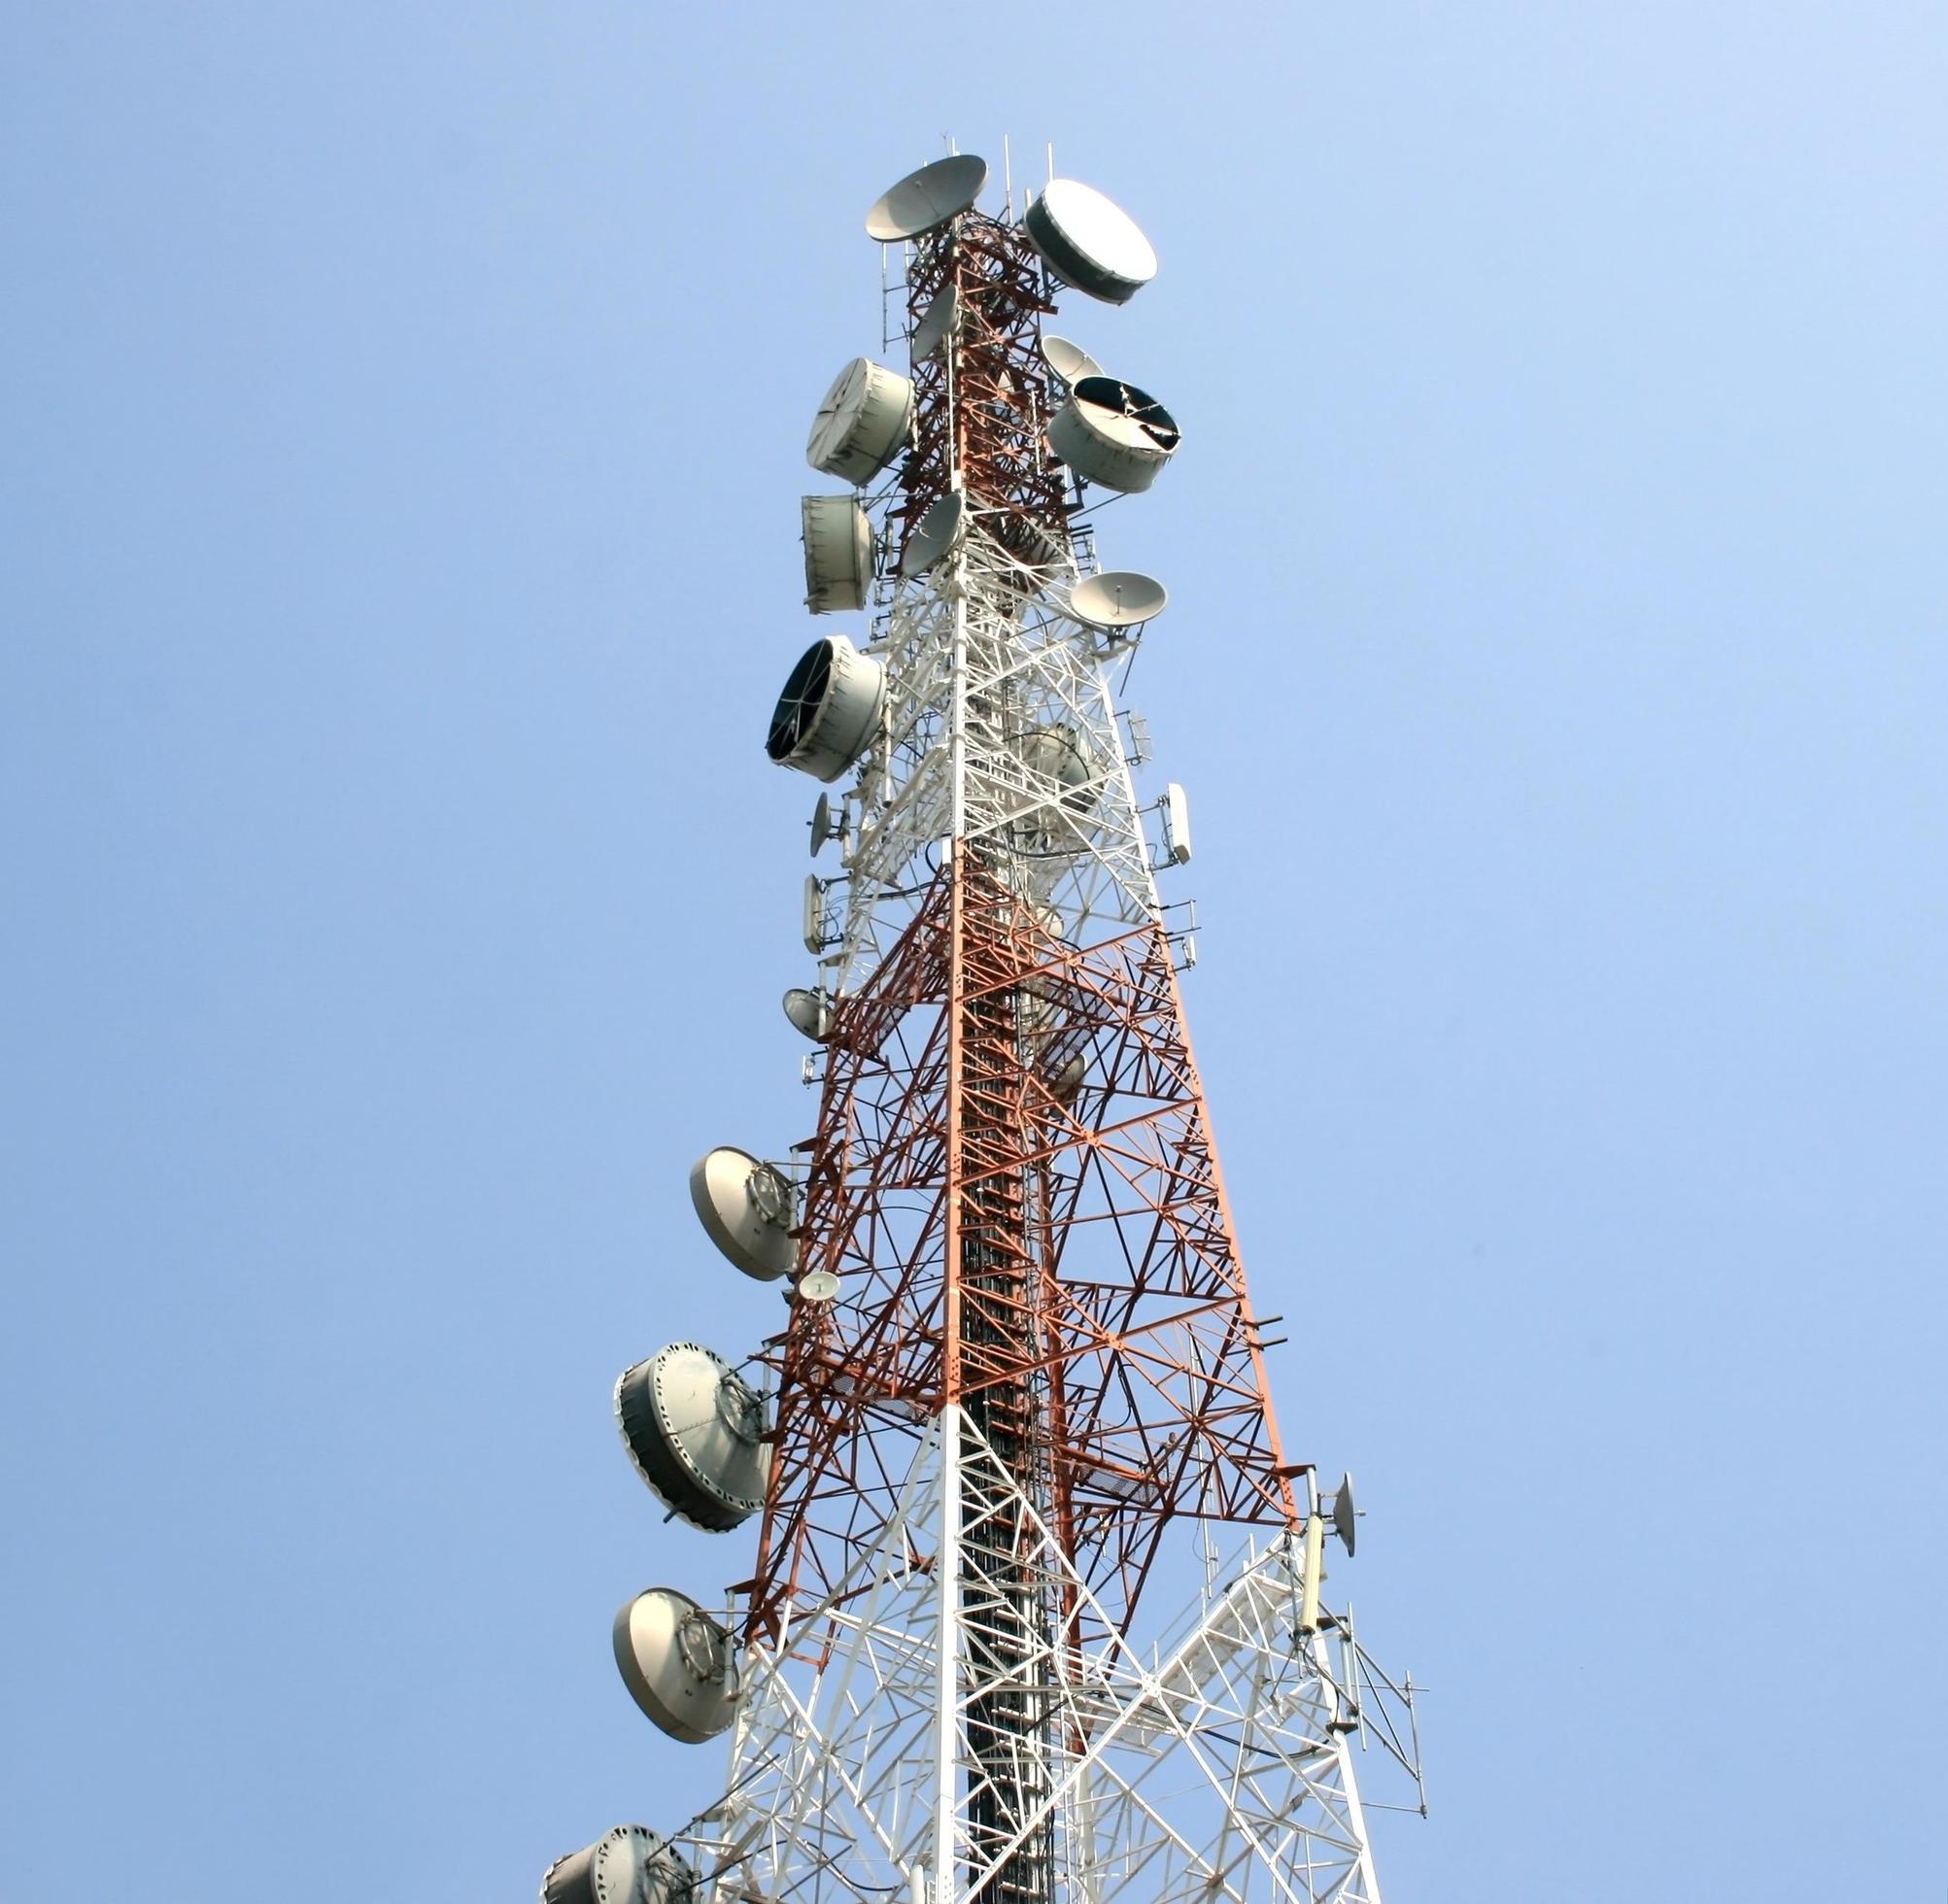 Antenne radio de télécommunication et tour satellite avec ciel